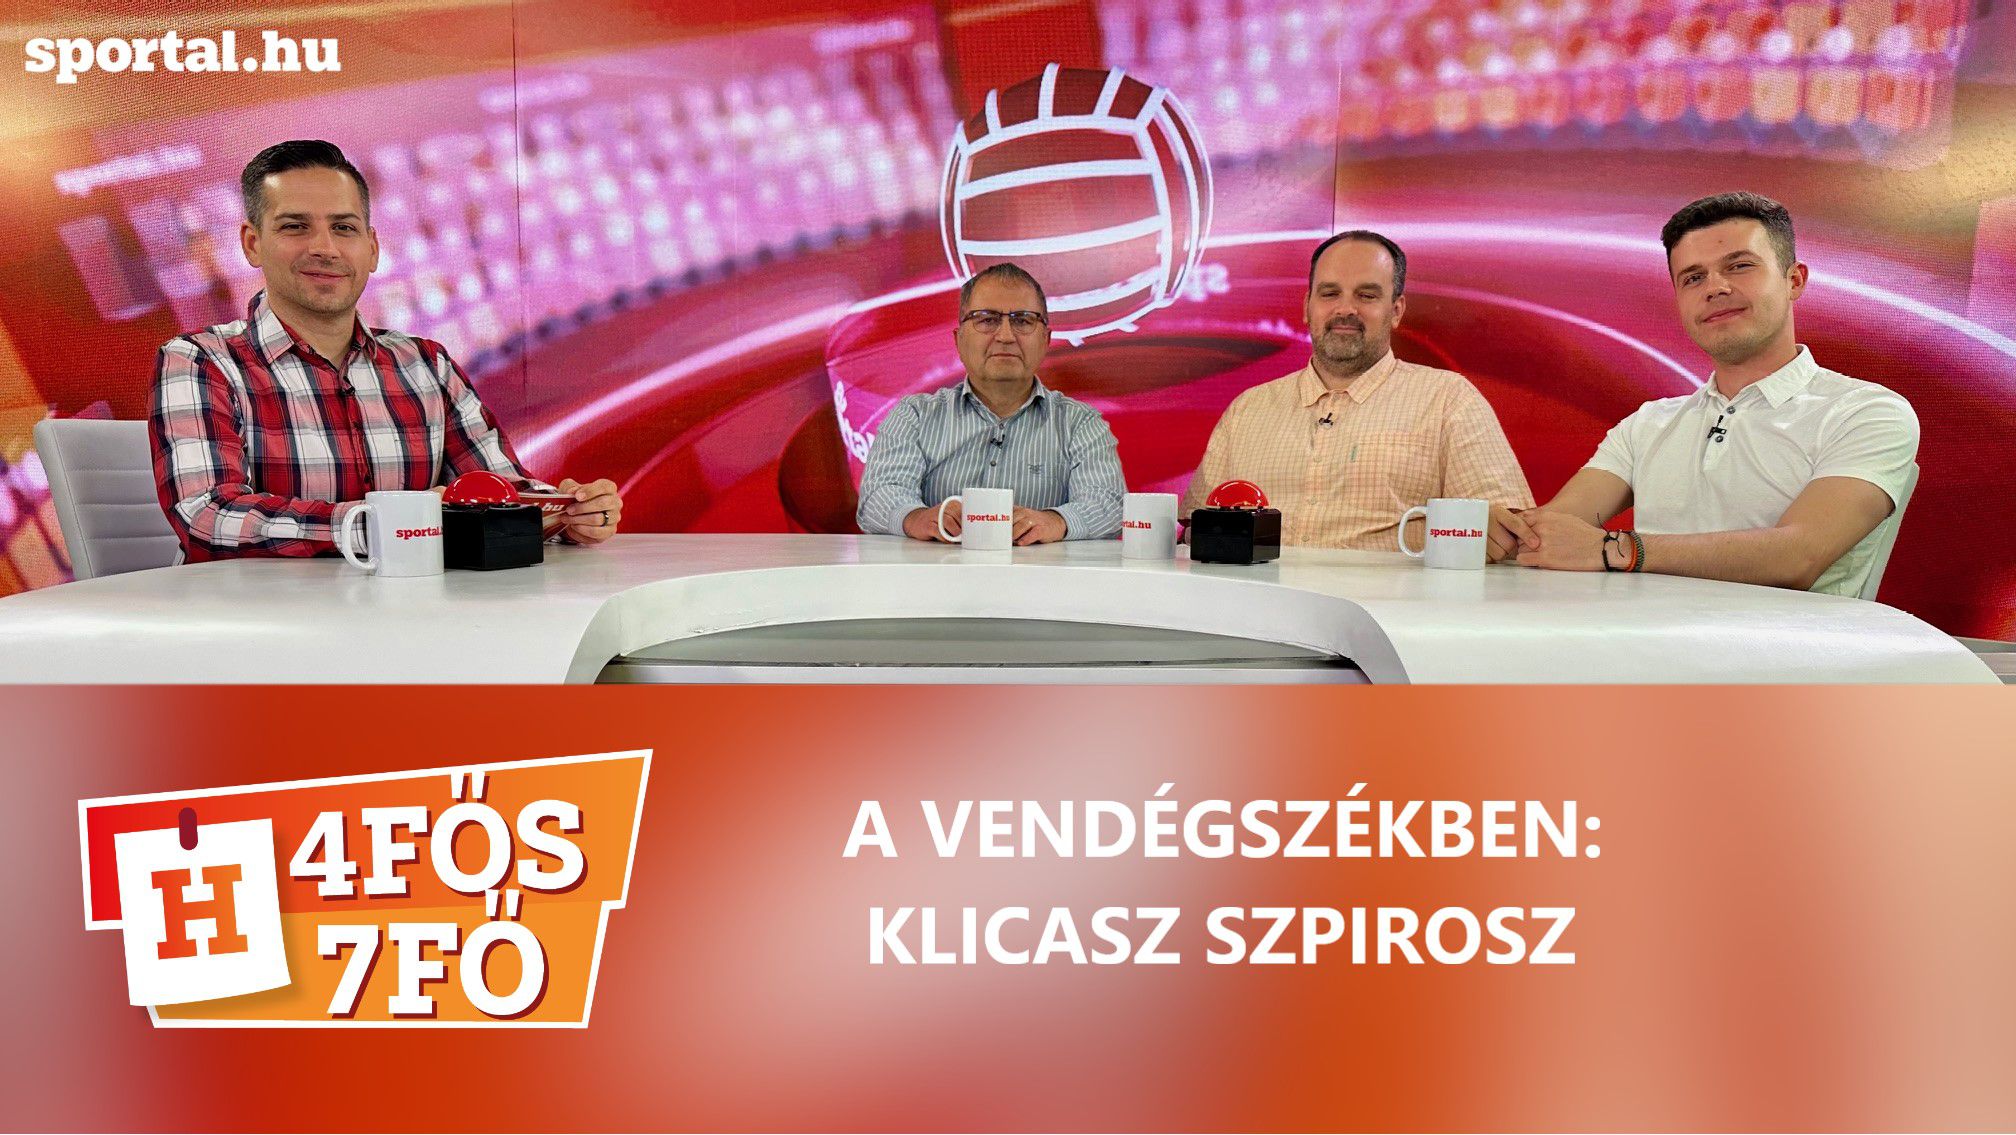 A Sportal Tv stúdiójában: Cselleng Ádám, Szekeres Tamás, Tősér Norbert és Klicasz Szpirosz